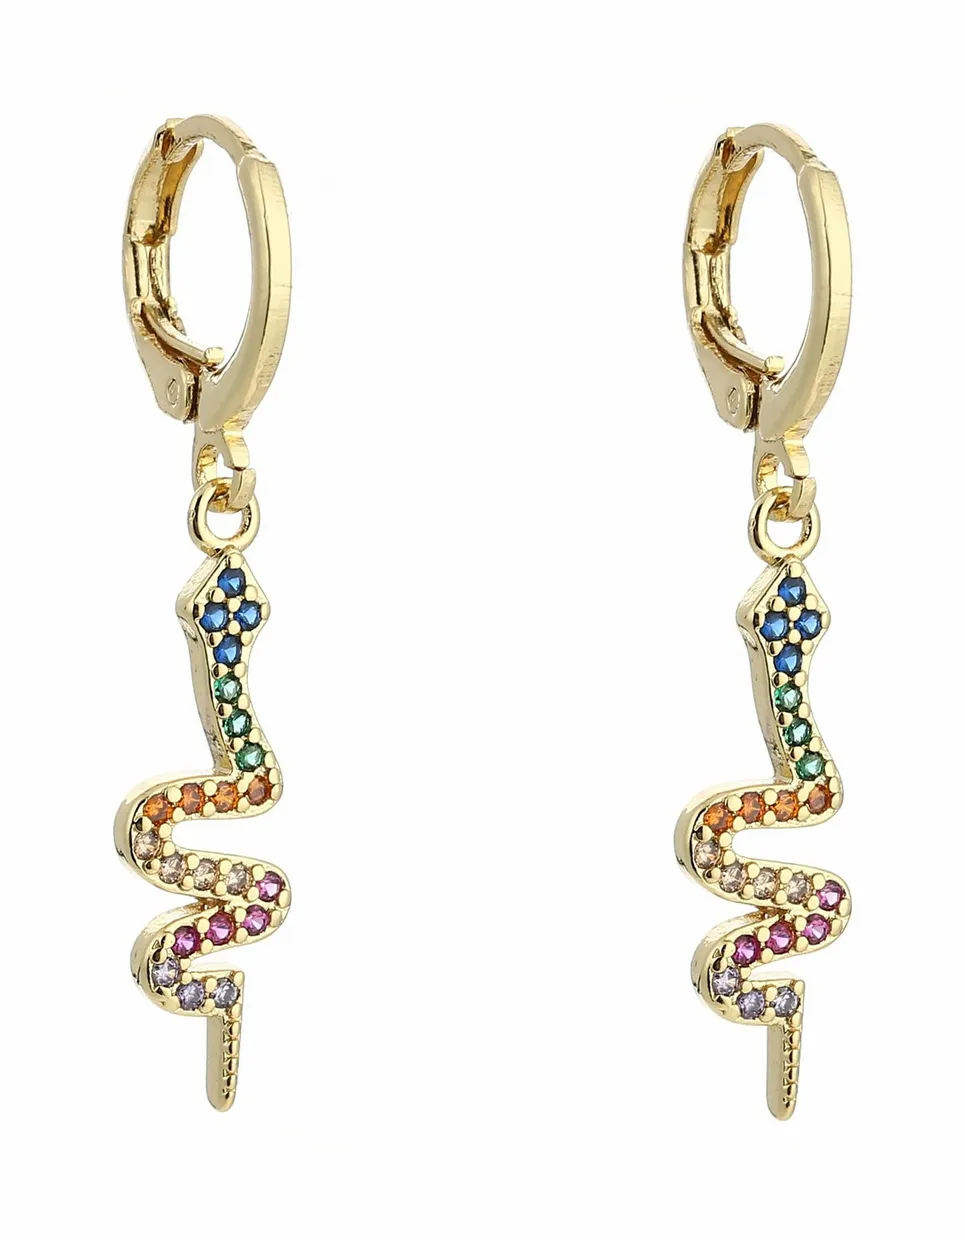 Rainbow snake earrings gold